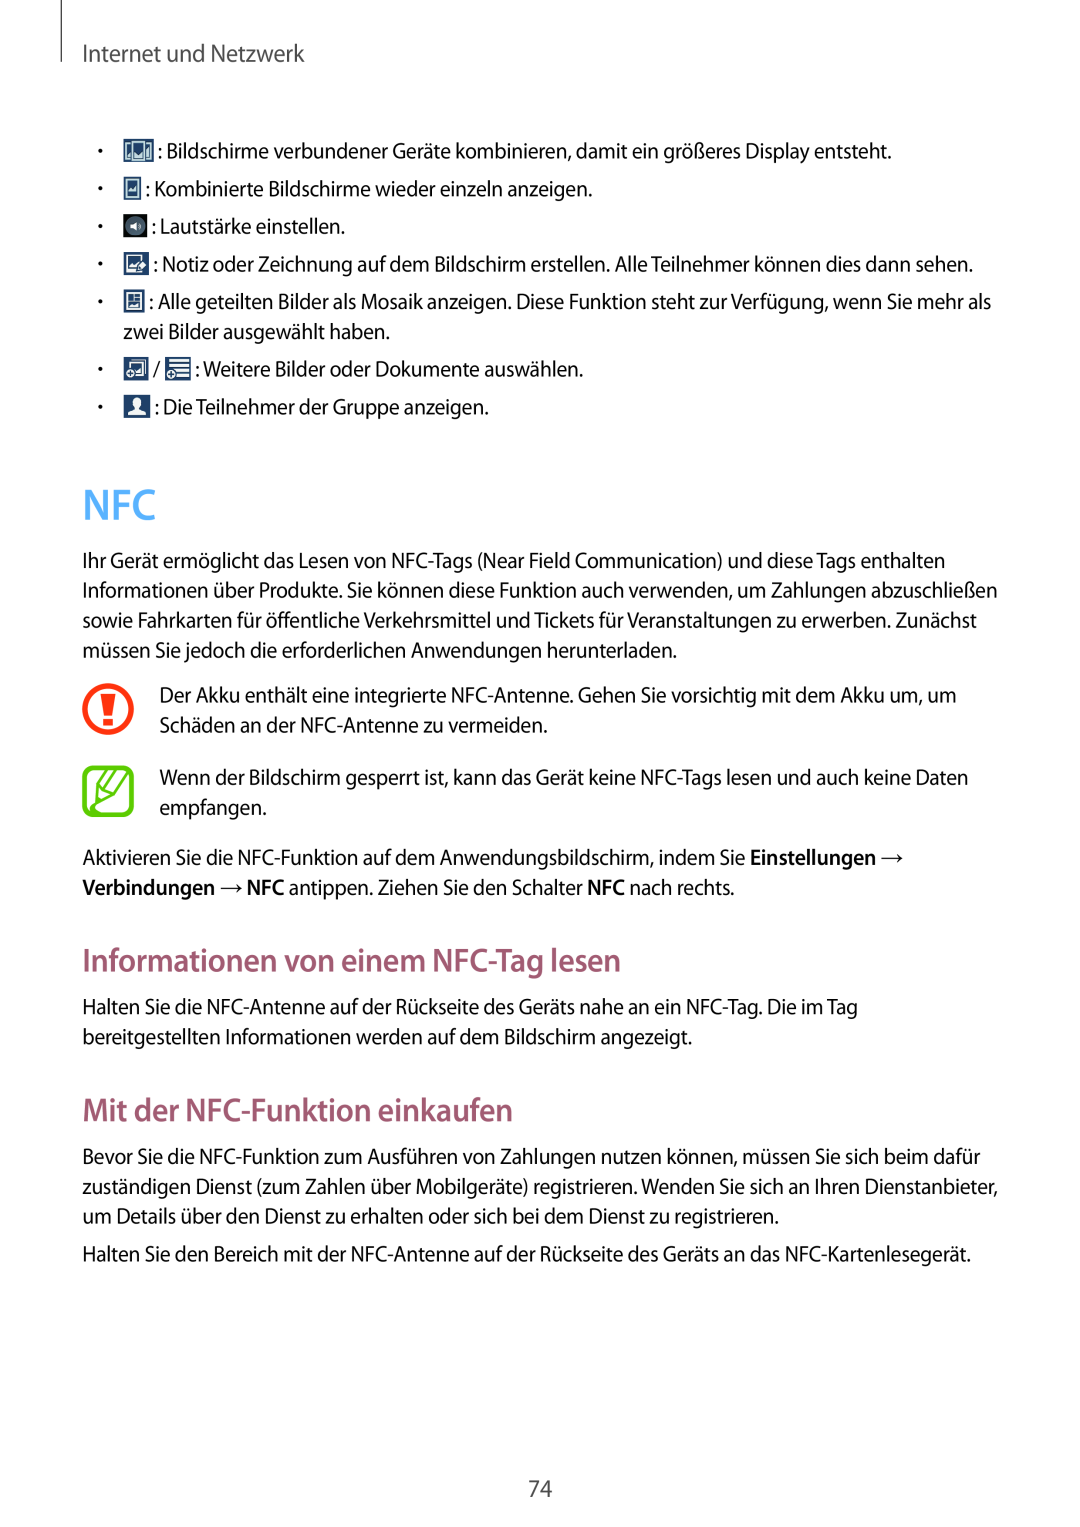 Samsung GT-I9505ZKAIDE manual Informationen von einem NFC-Tag lesen, Mit der NFC-Funktion einkaufen, Internet und Netzwerk 